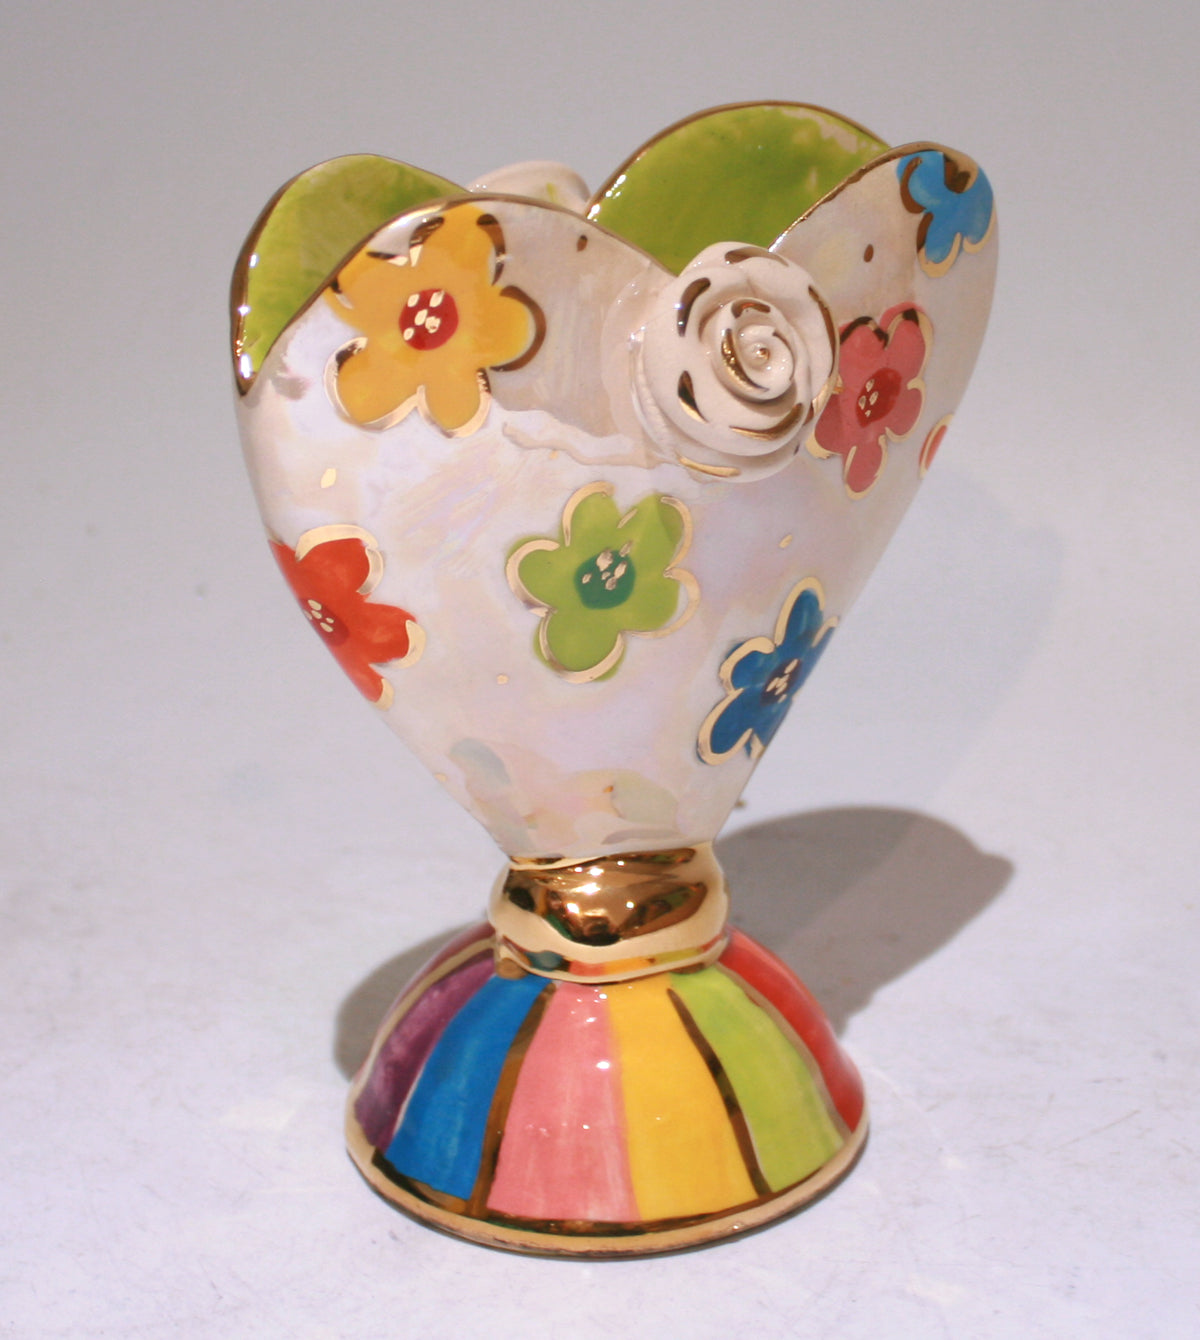 Baby Heart Vase in Daisy